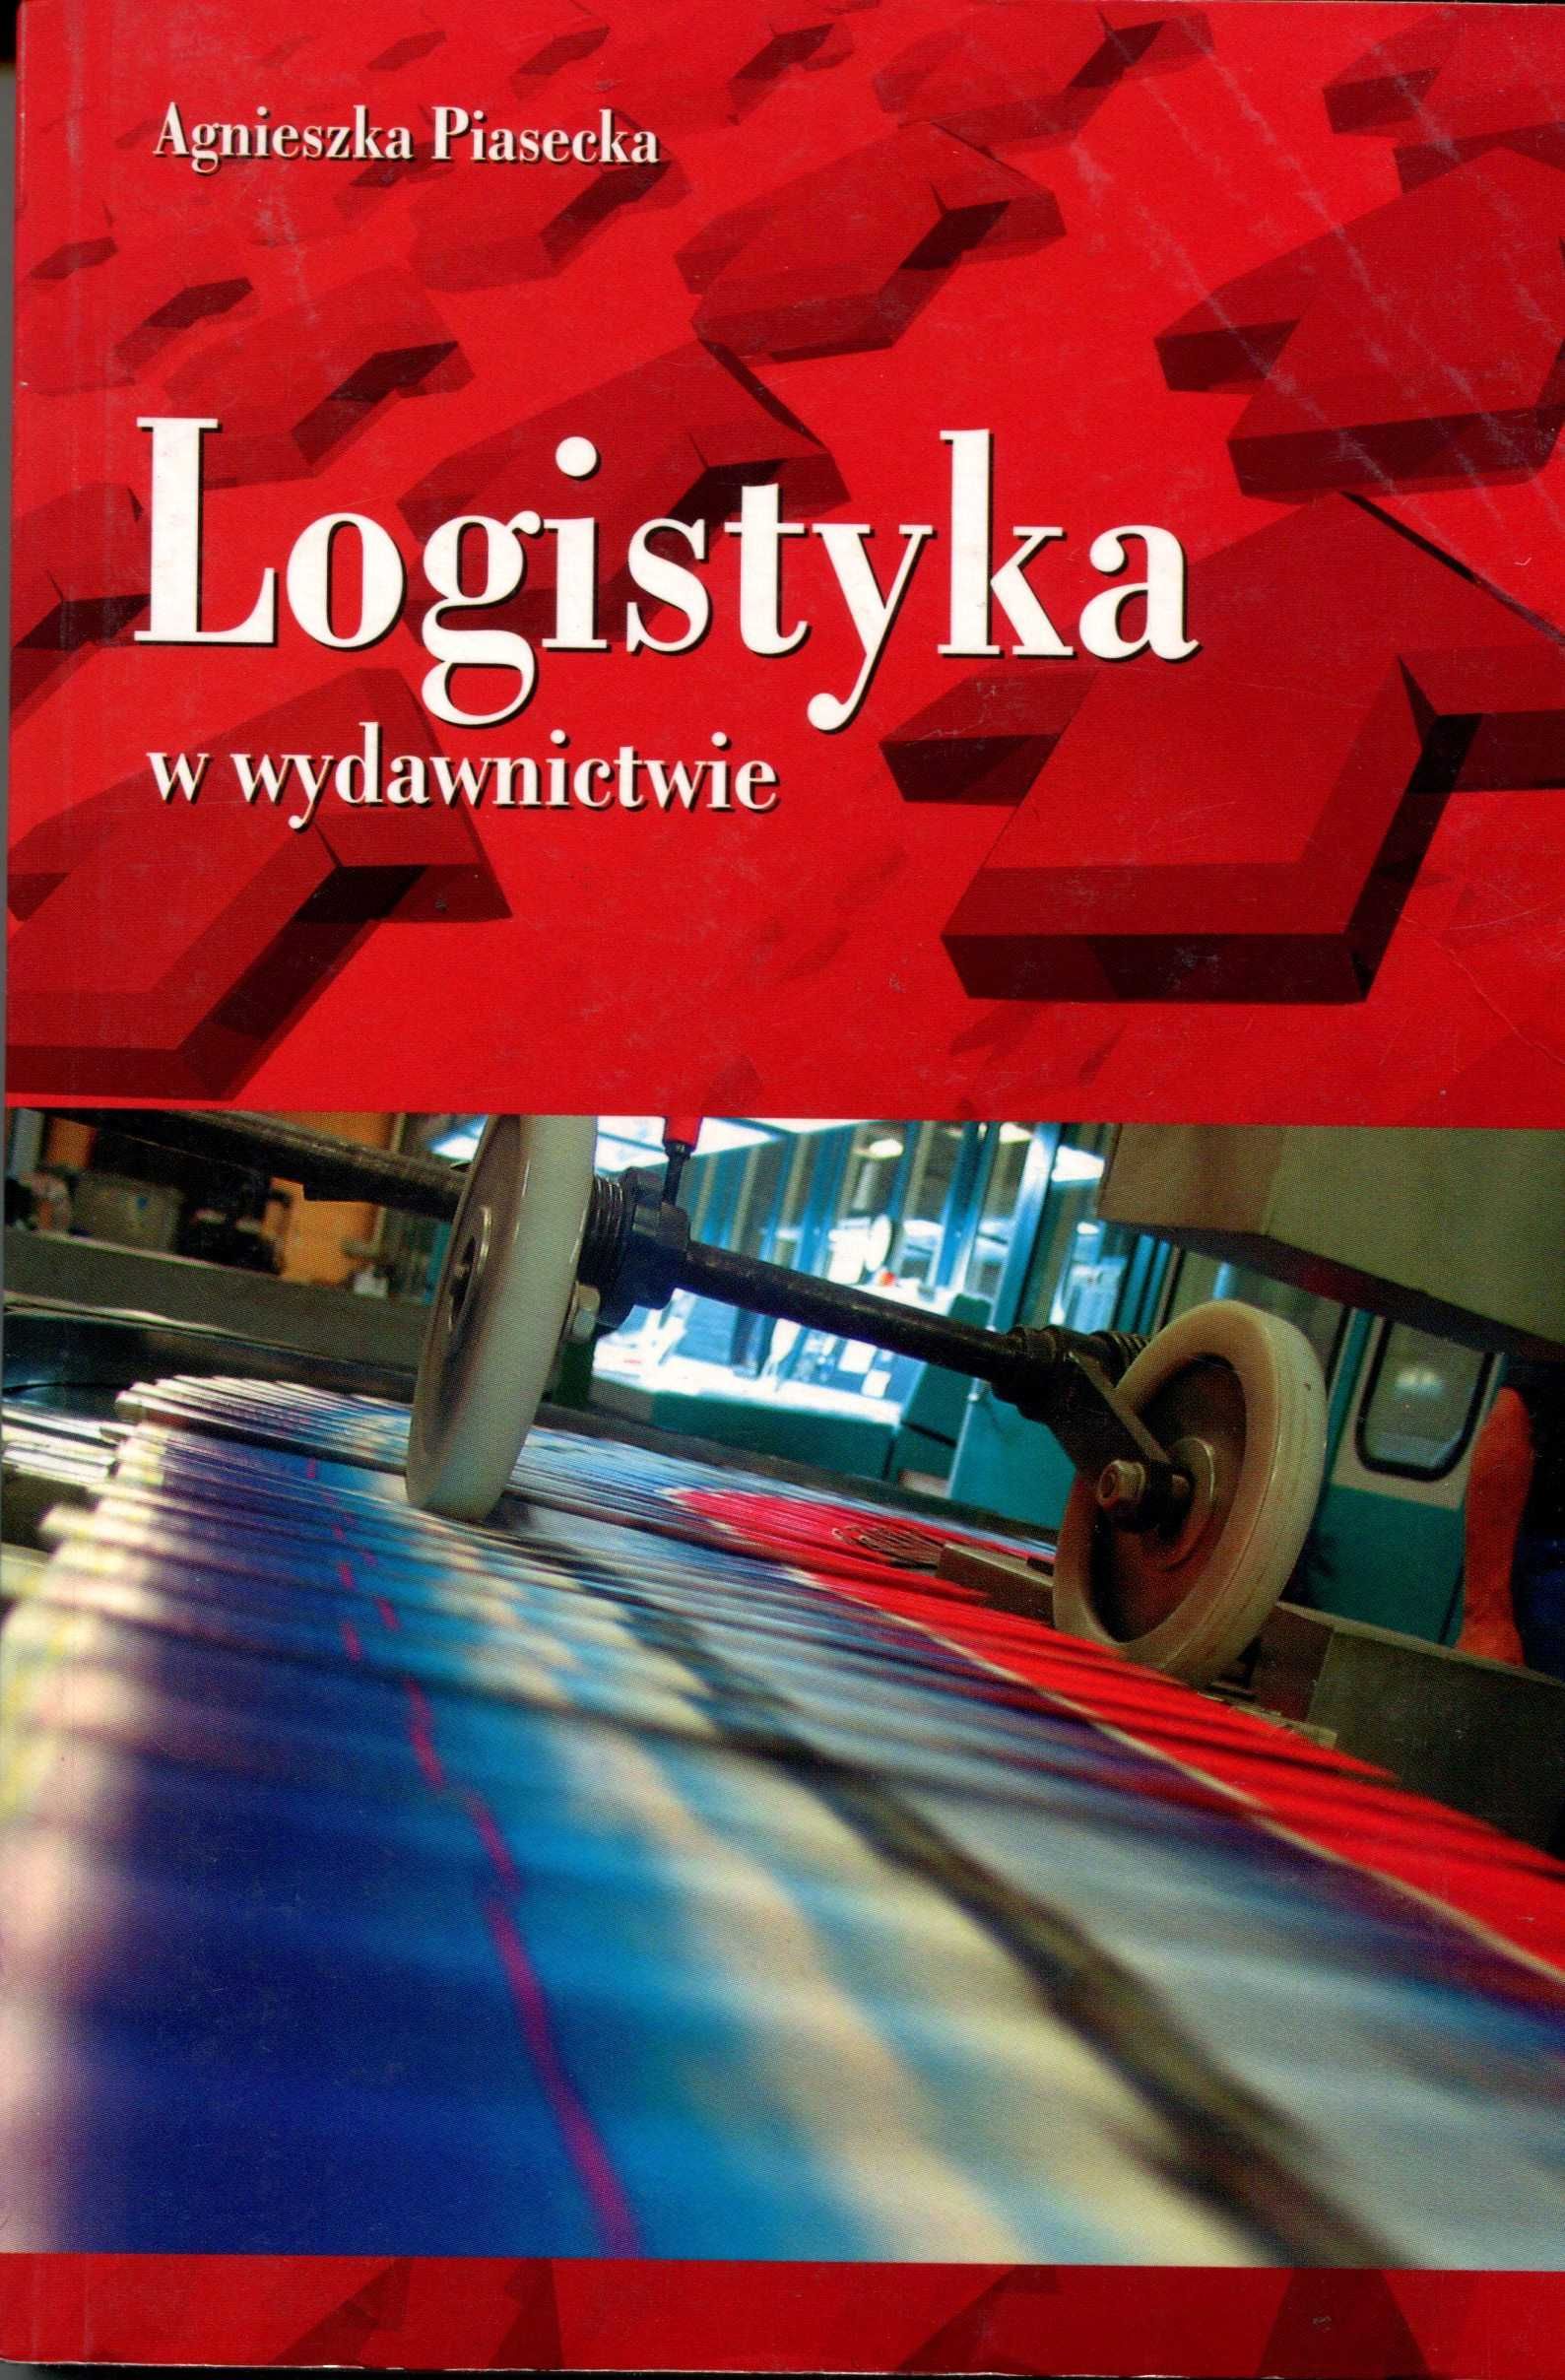 Logistyka w wydawnictwie Agnieszka Piasecka